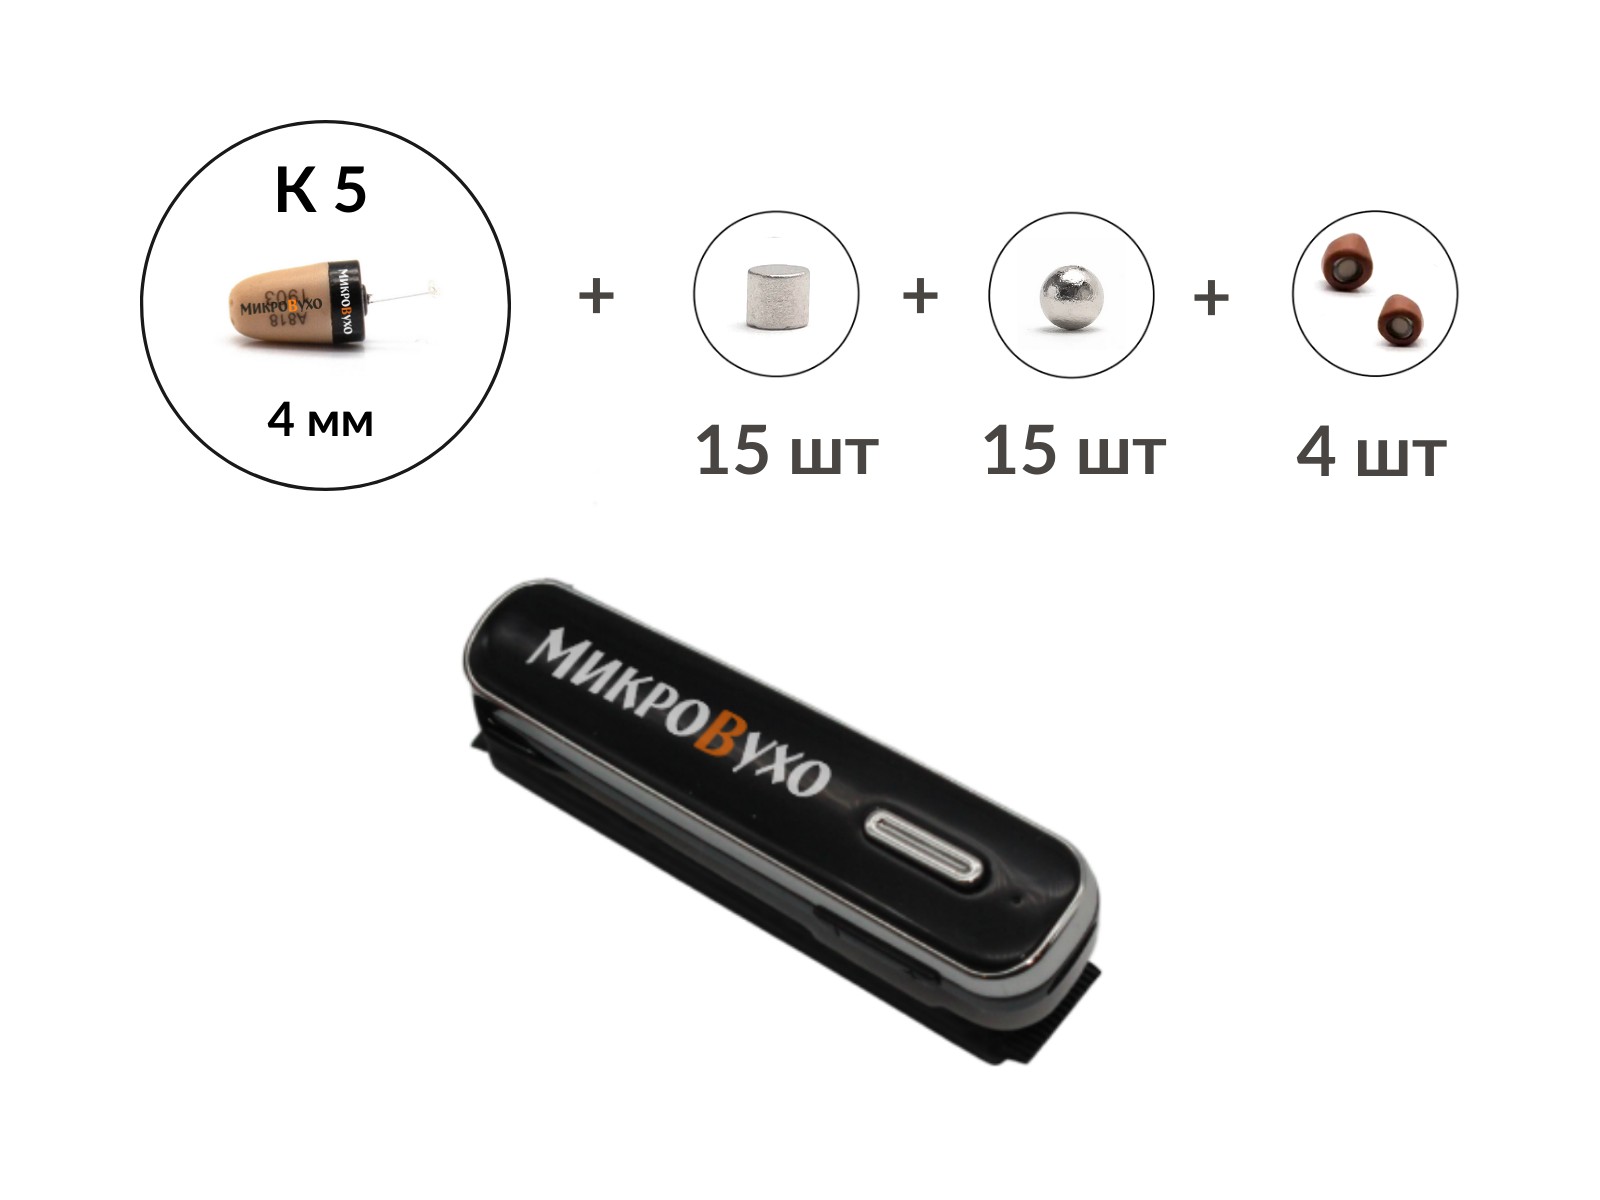 Универсальная гарнитура Bluetooth Box Premier Lite Plus с капсулой K5 4 мм и магнитами 2 мм - изображение